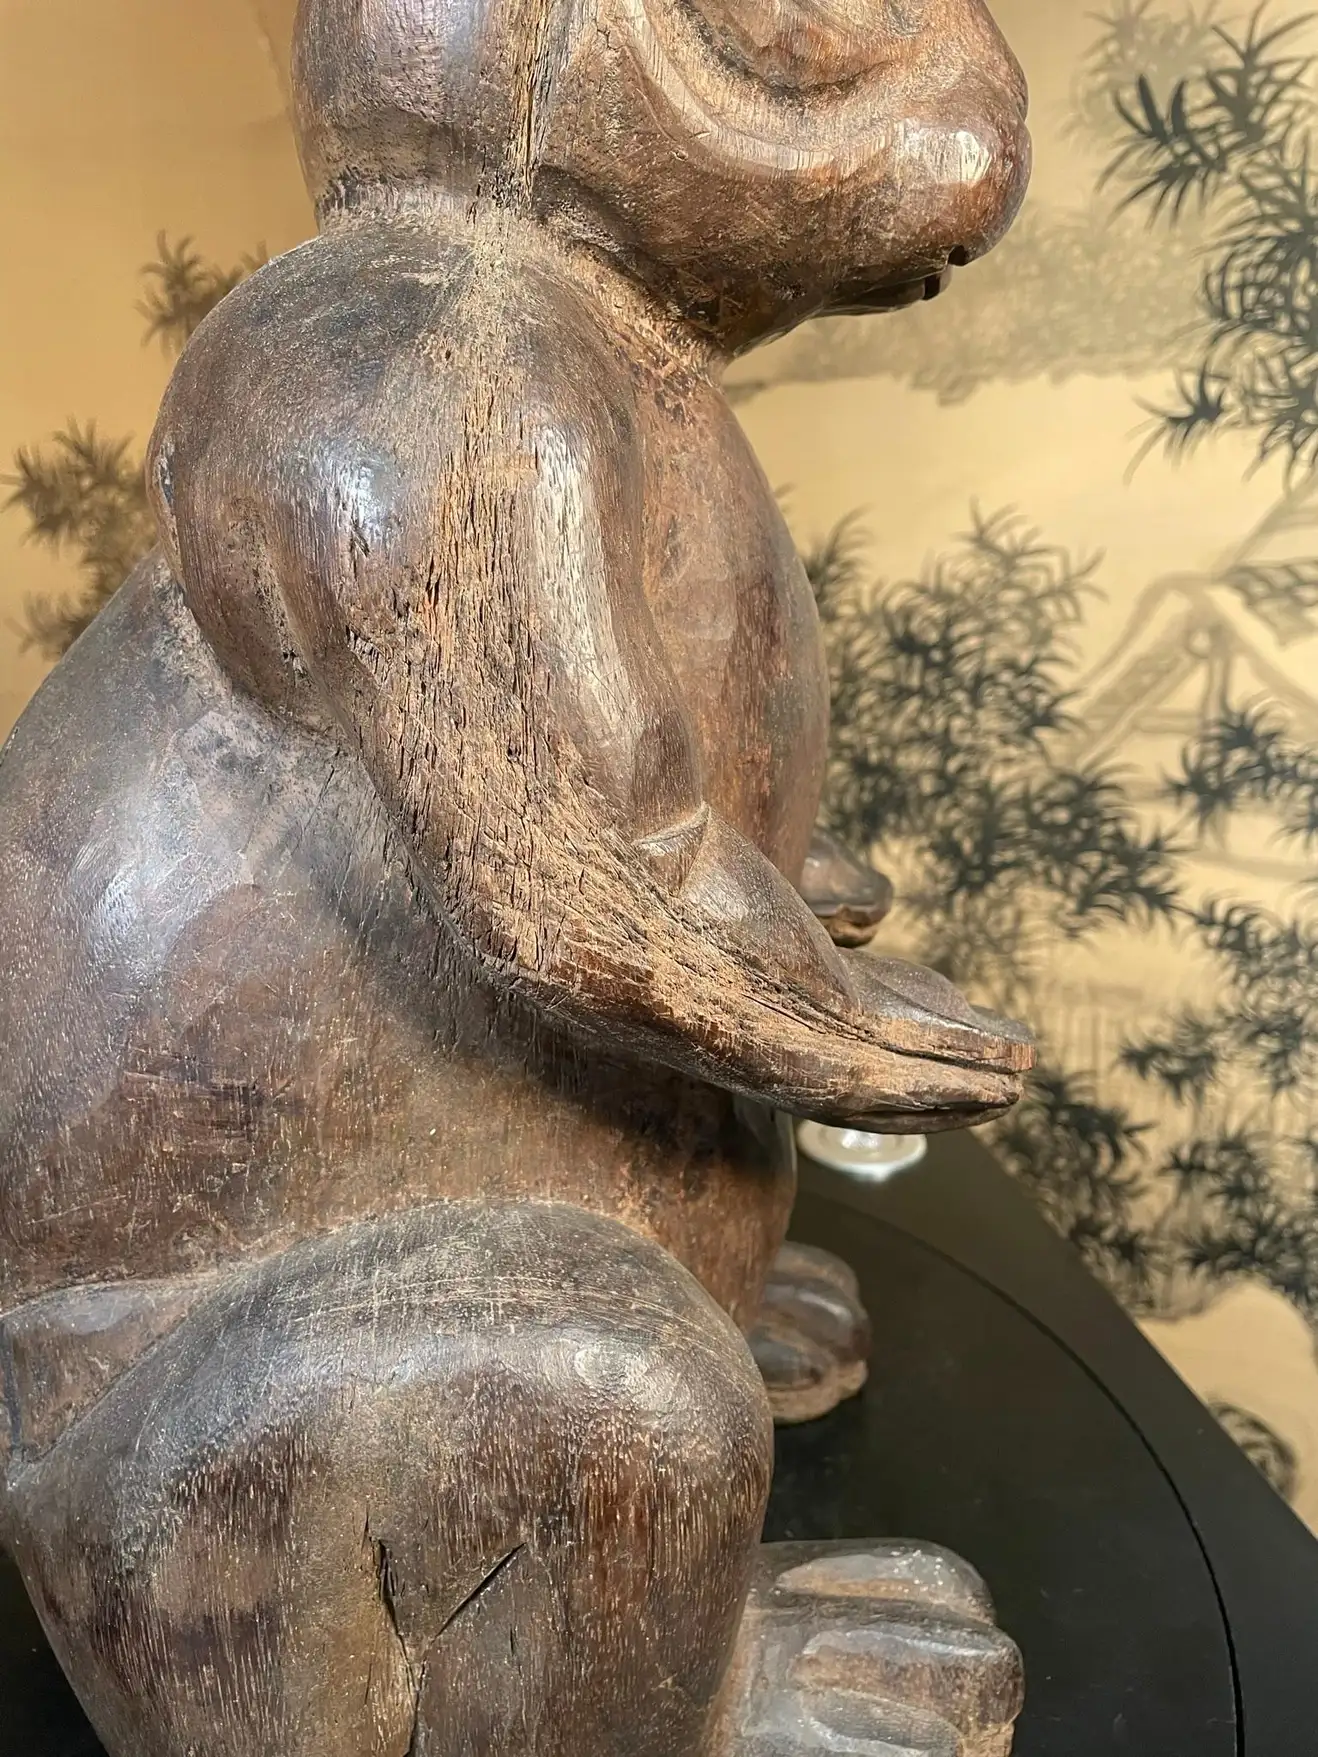 Fine Antique Huge Hand Carved Folk Wooden Art Rabbit , Signed